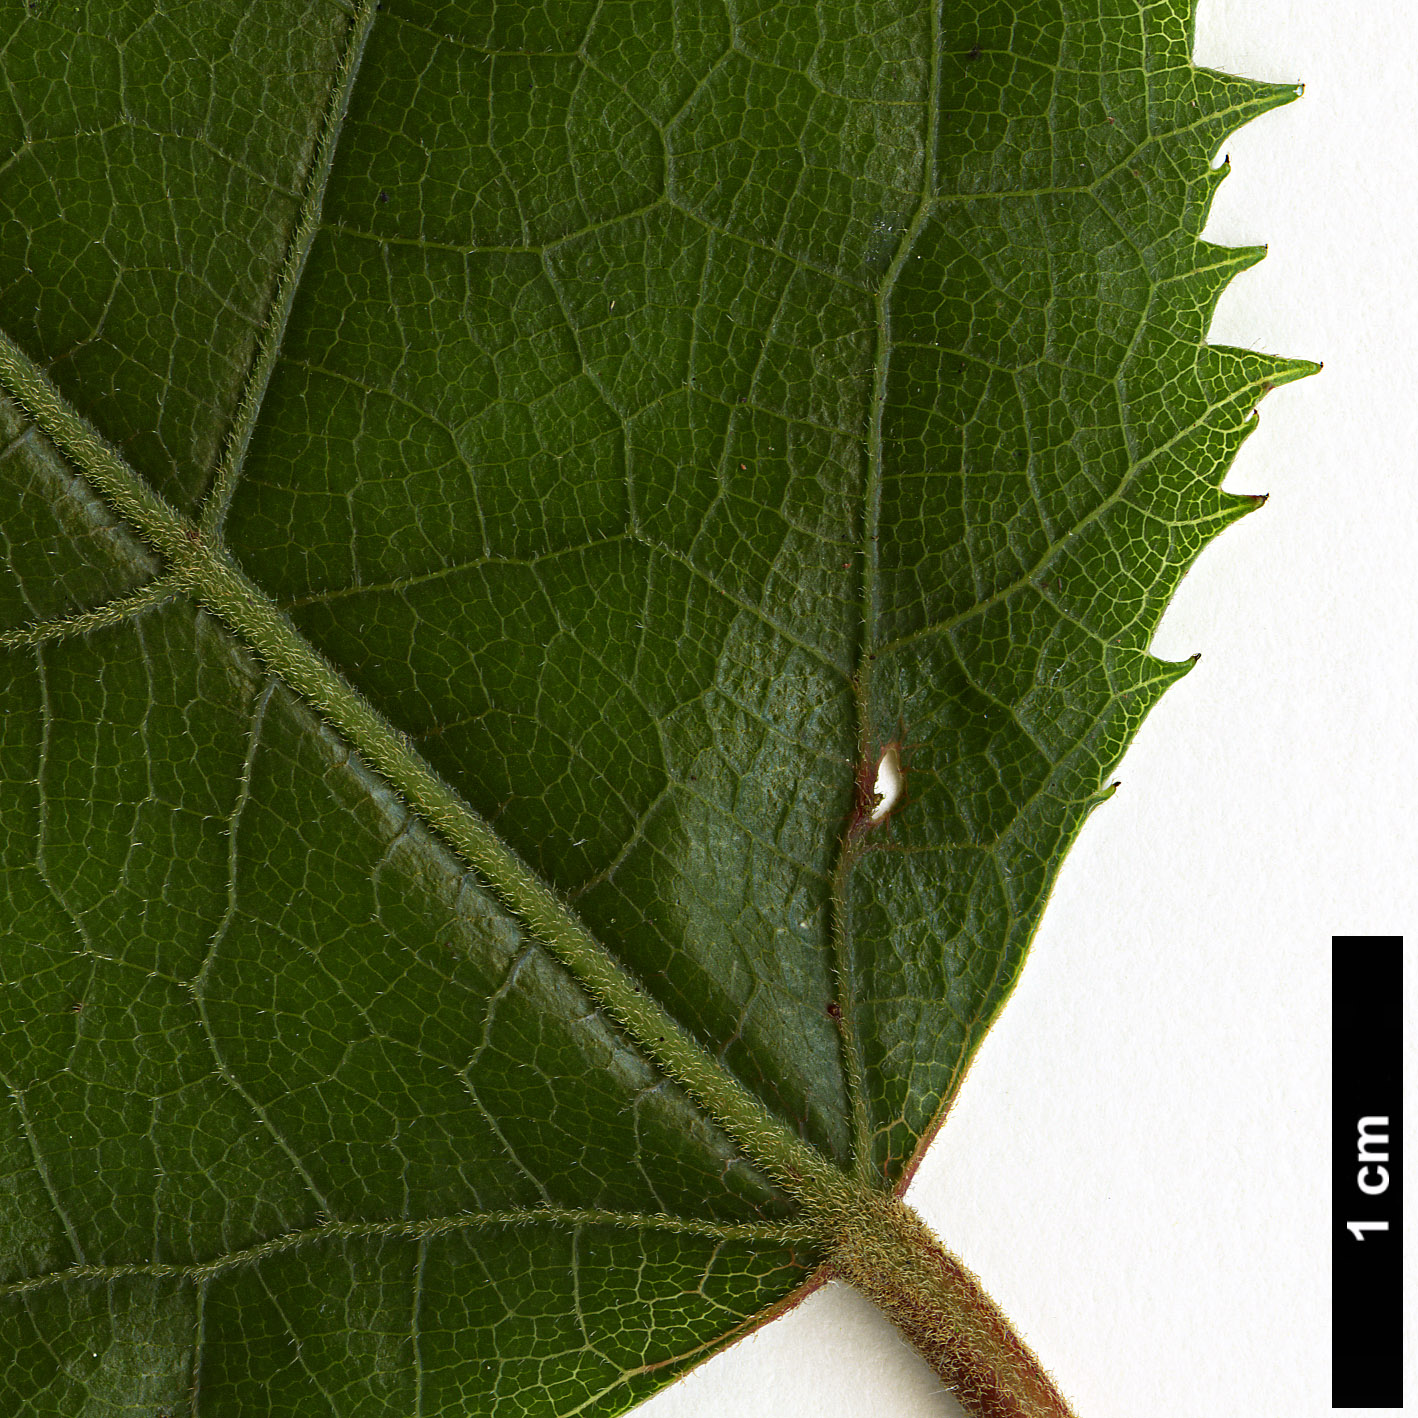 High resolution image: Family: Elaeocarpaceae - Genus: Aristotelia - Taxon: serrata